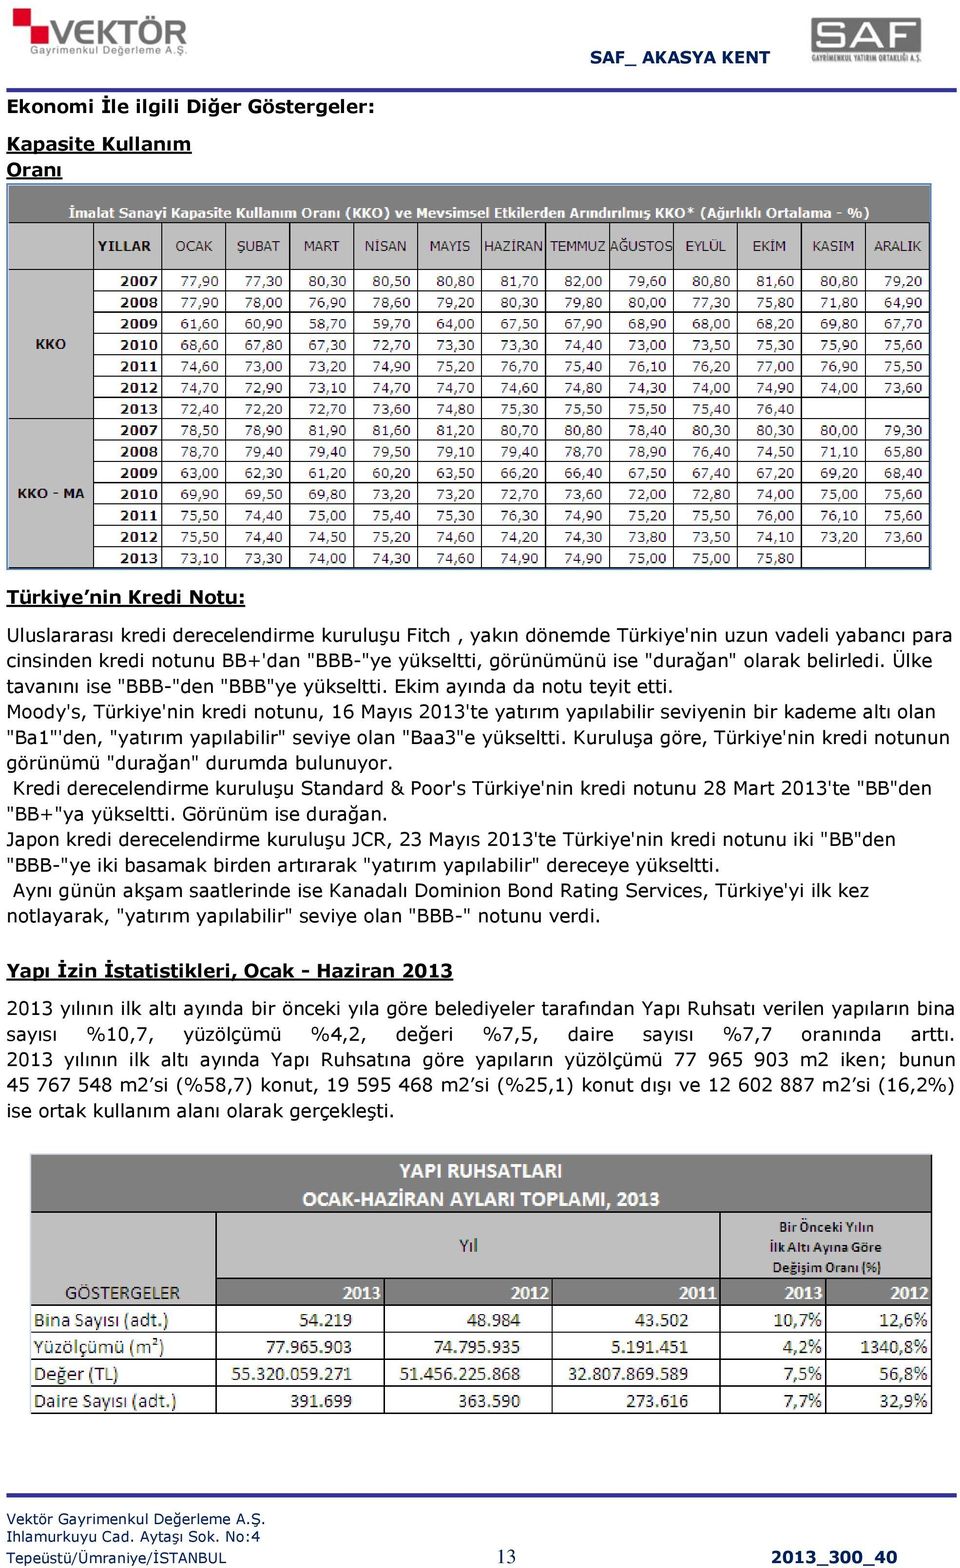 Moody's, Türkiye'nin kredi notunu, 16 Mayıs 2013'te yatırım yapılabilir seviyenin bir kademe altı olan "Ba1"'den, "yatırım yapılabilir" seviye olan "Baa3"e yükseltti.